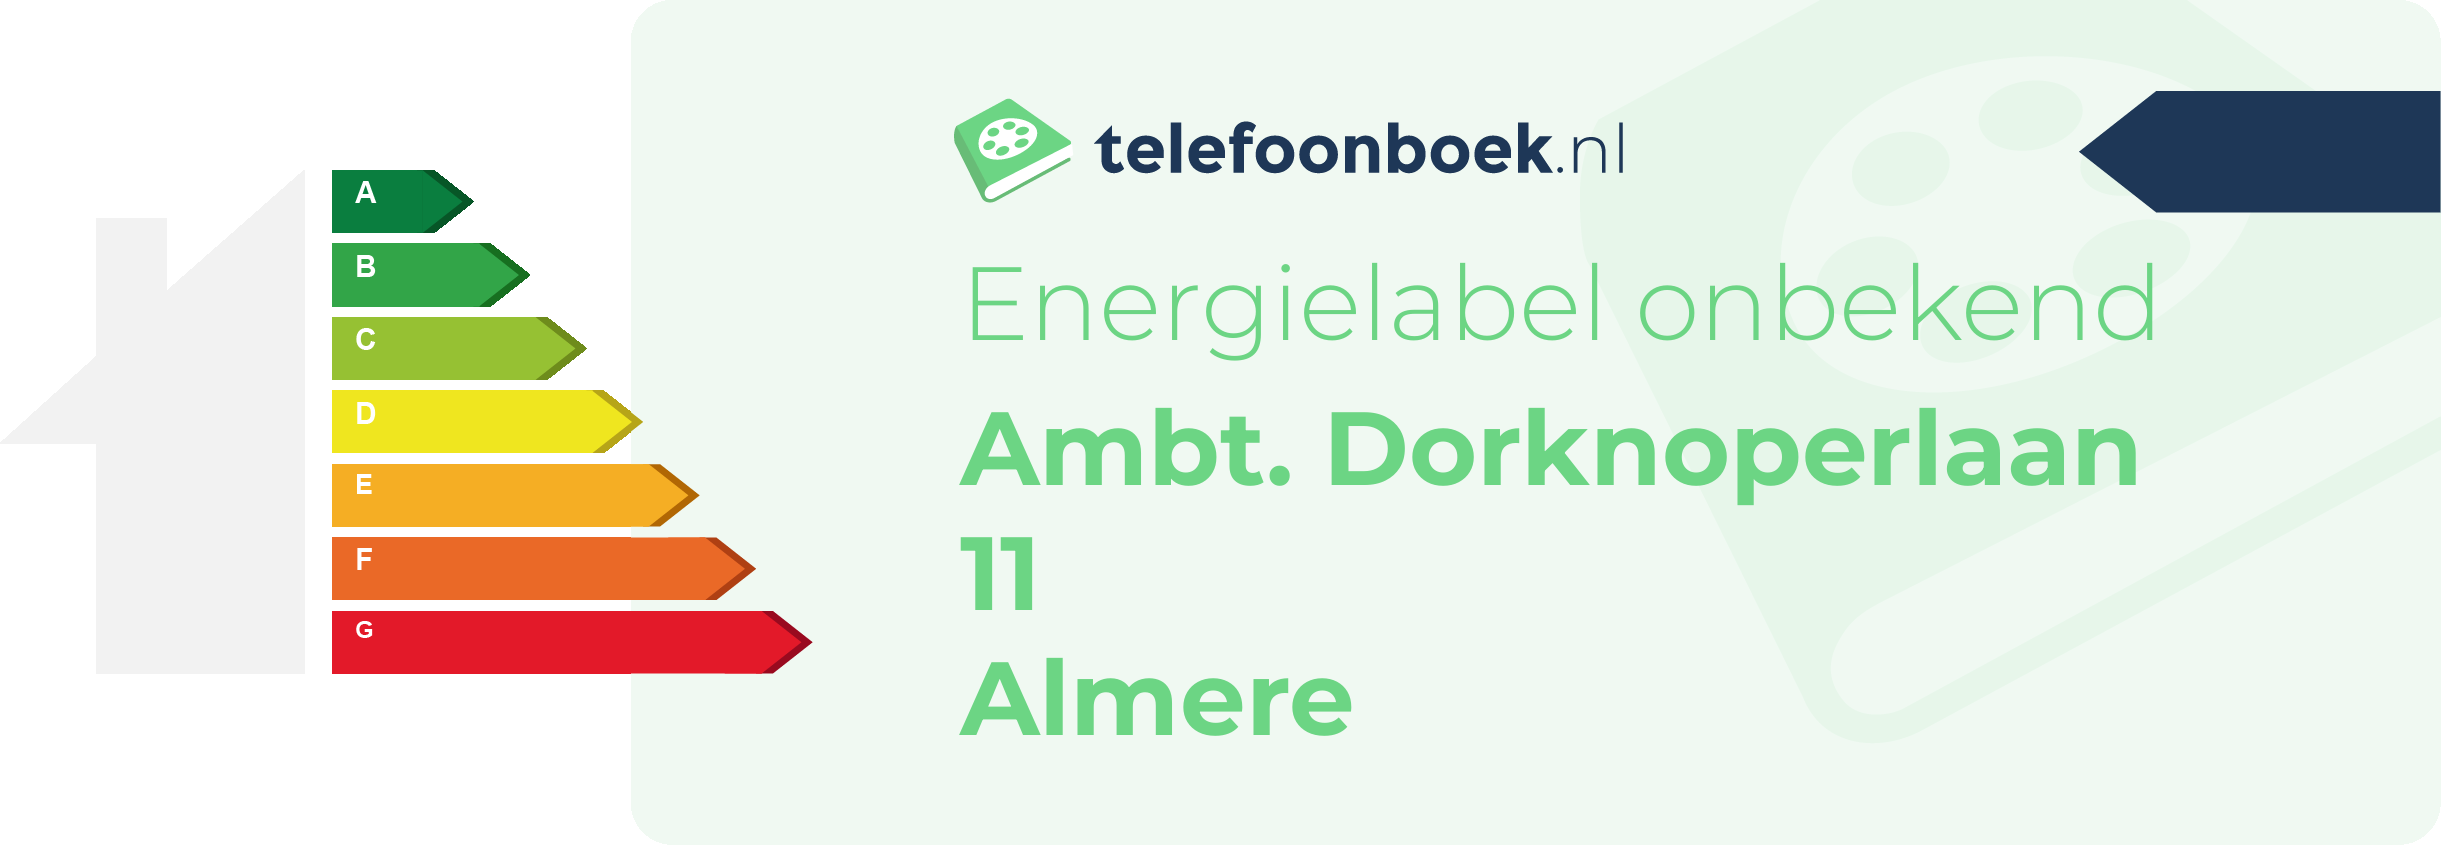 Energielabel Ambt. Dorknoperlaan 11 Almere